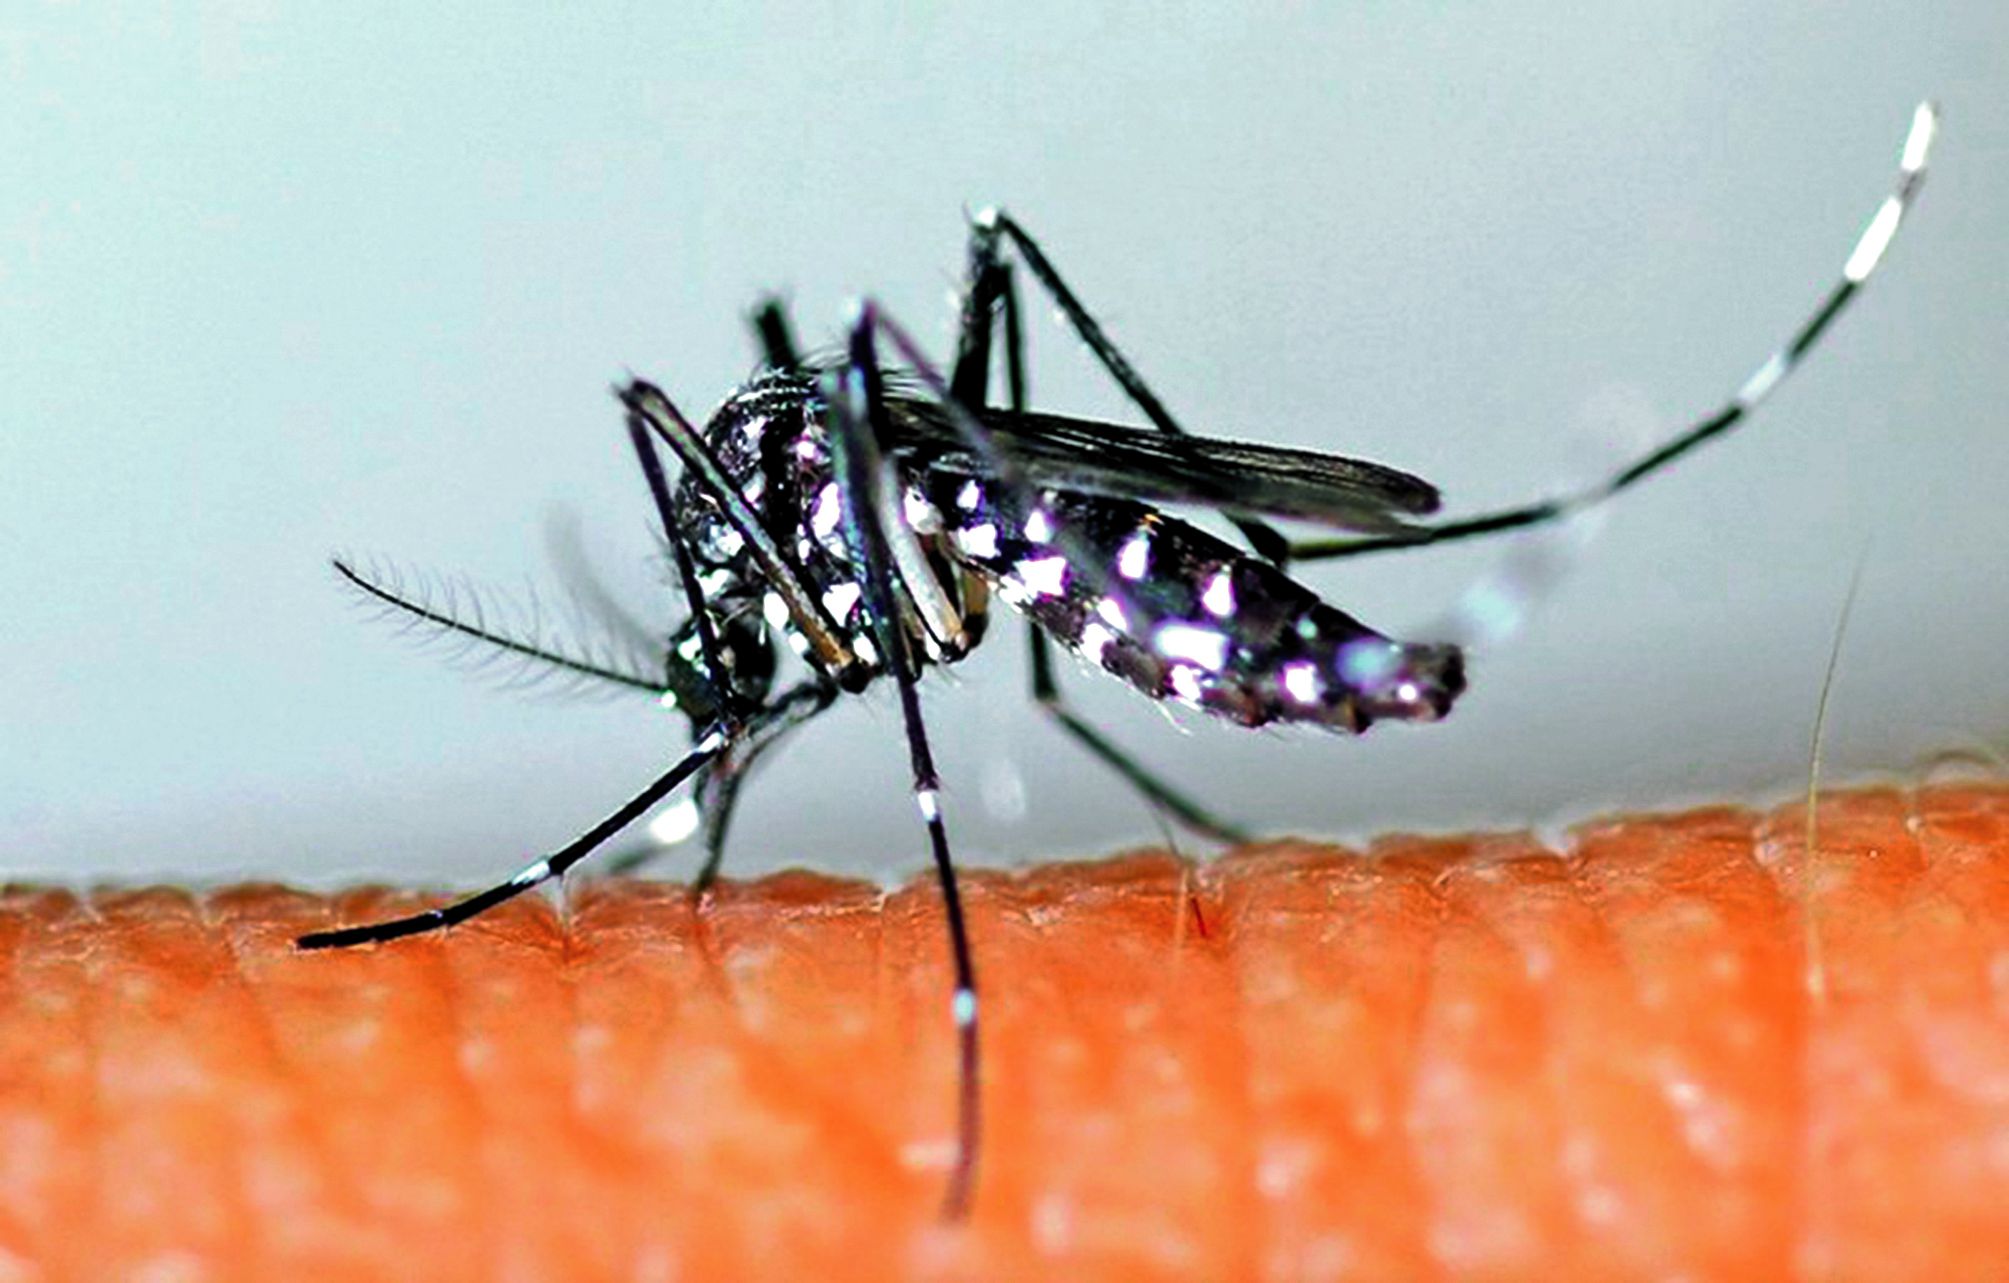 La dengue de type 2 n’a pas circulé depuis l’an 2000 en Polynésie. Une grande partie de la population n’est donc pas immunisée, ce qui fait craindre une épidémie de grande ampleur.Photo DR